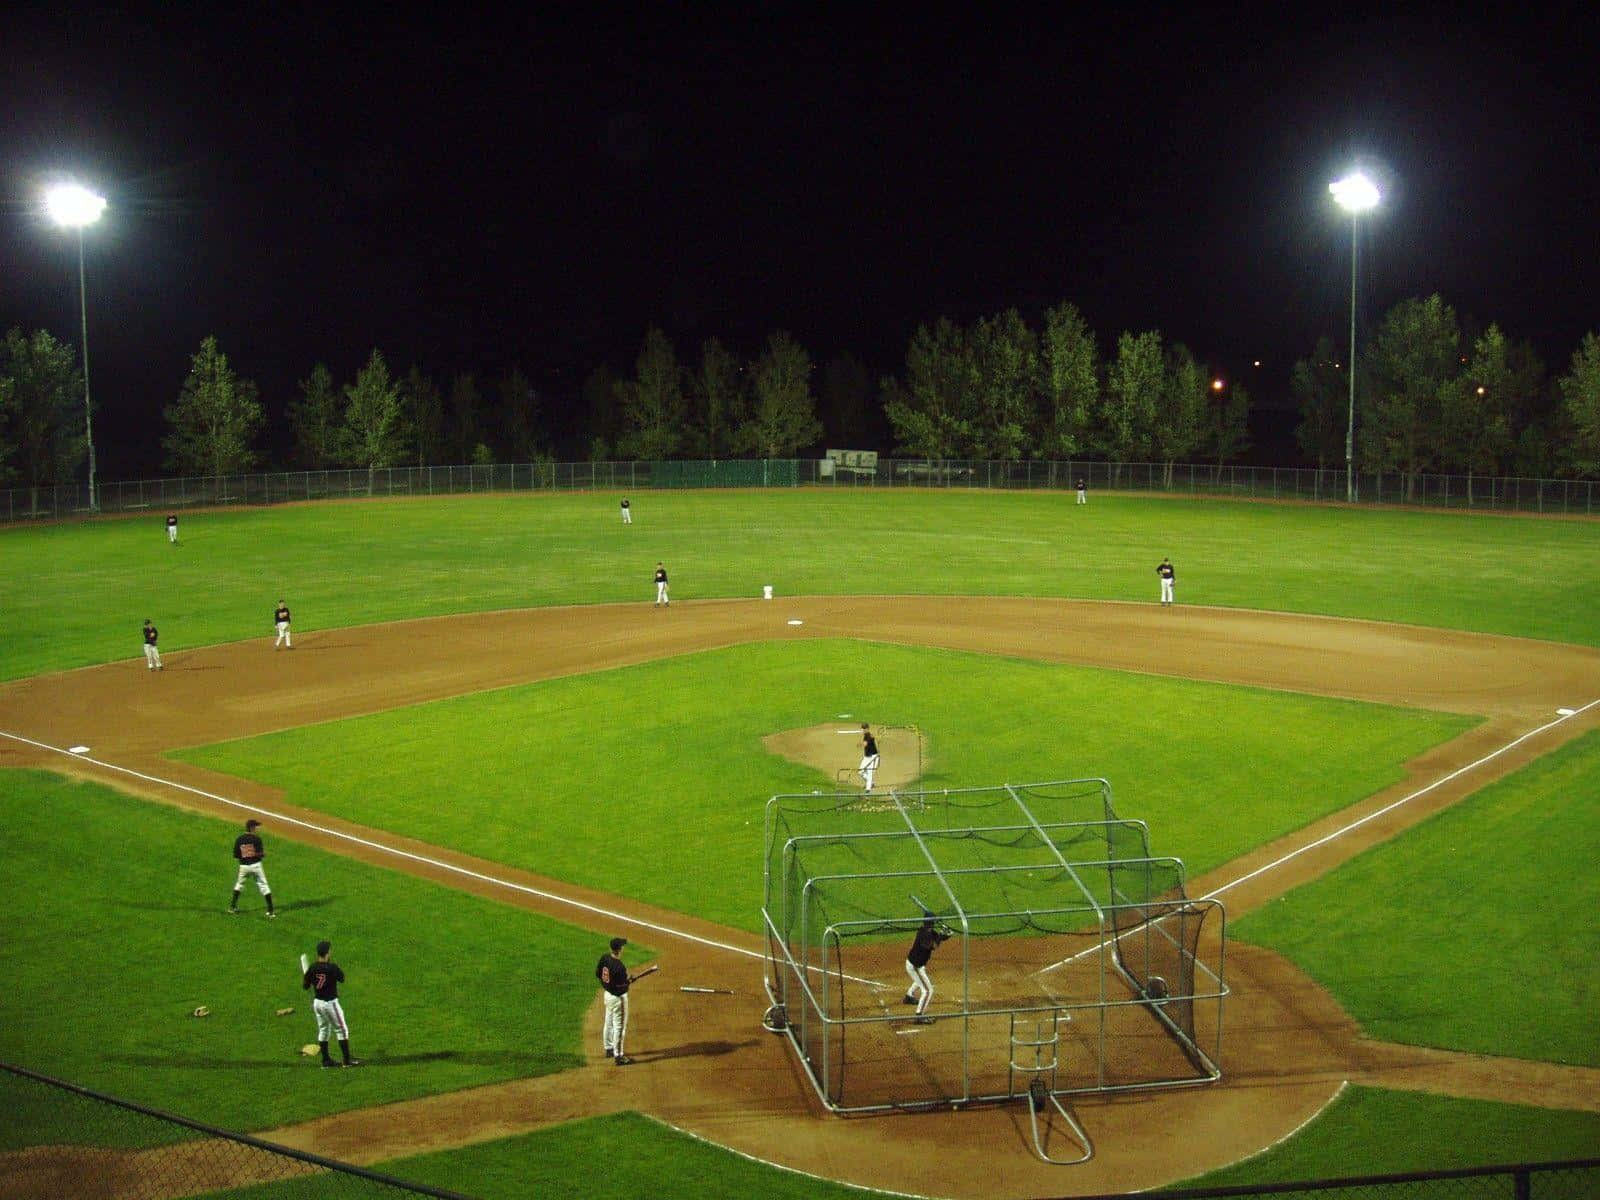 Grünerbaseballplatz Und Baseballspieler-hintergrund